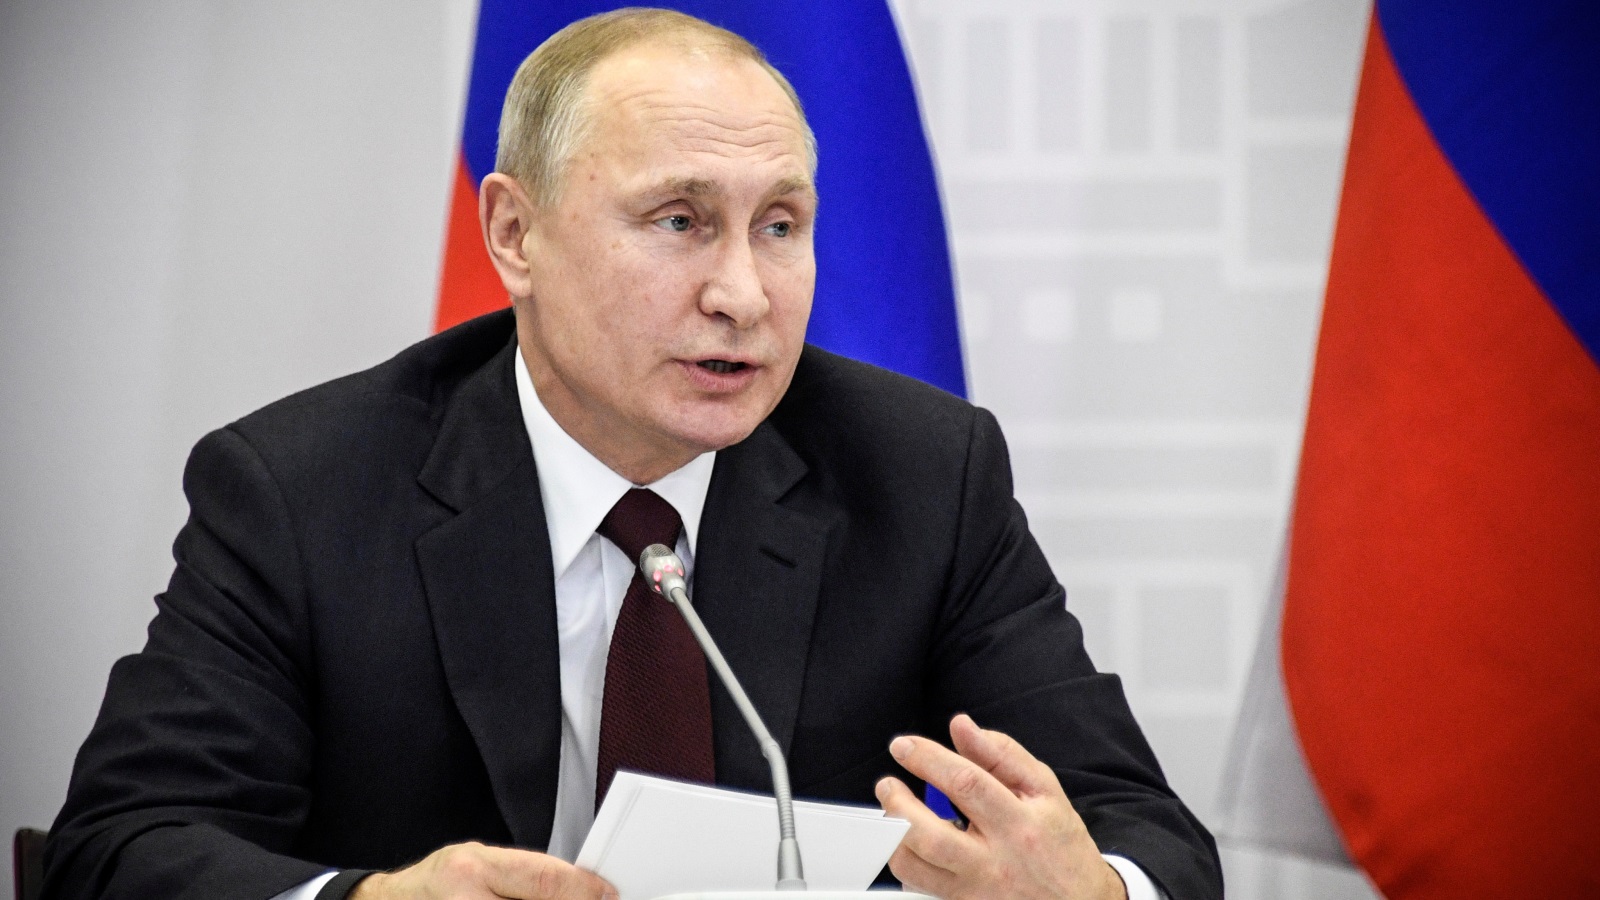 الرئيس الروسي فلاديمير بوتين يشير إلى أن الذكاء الاصطناعي يمكن أن يكون طريق روسيا لإعادة توازن السلطة بعد التحول الذي أنشأته أميركا (رويترز)